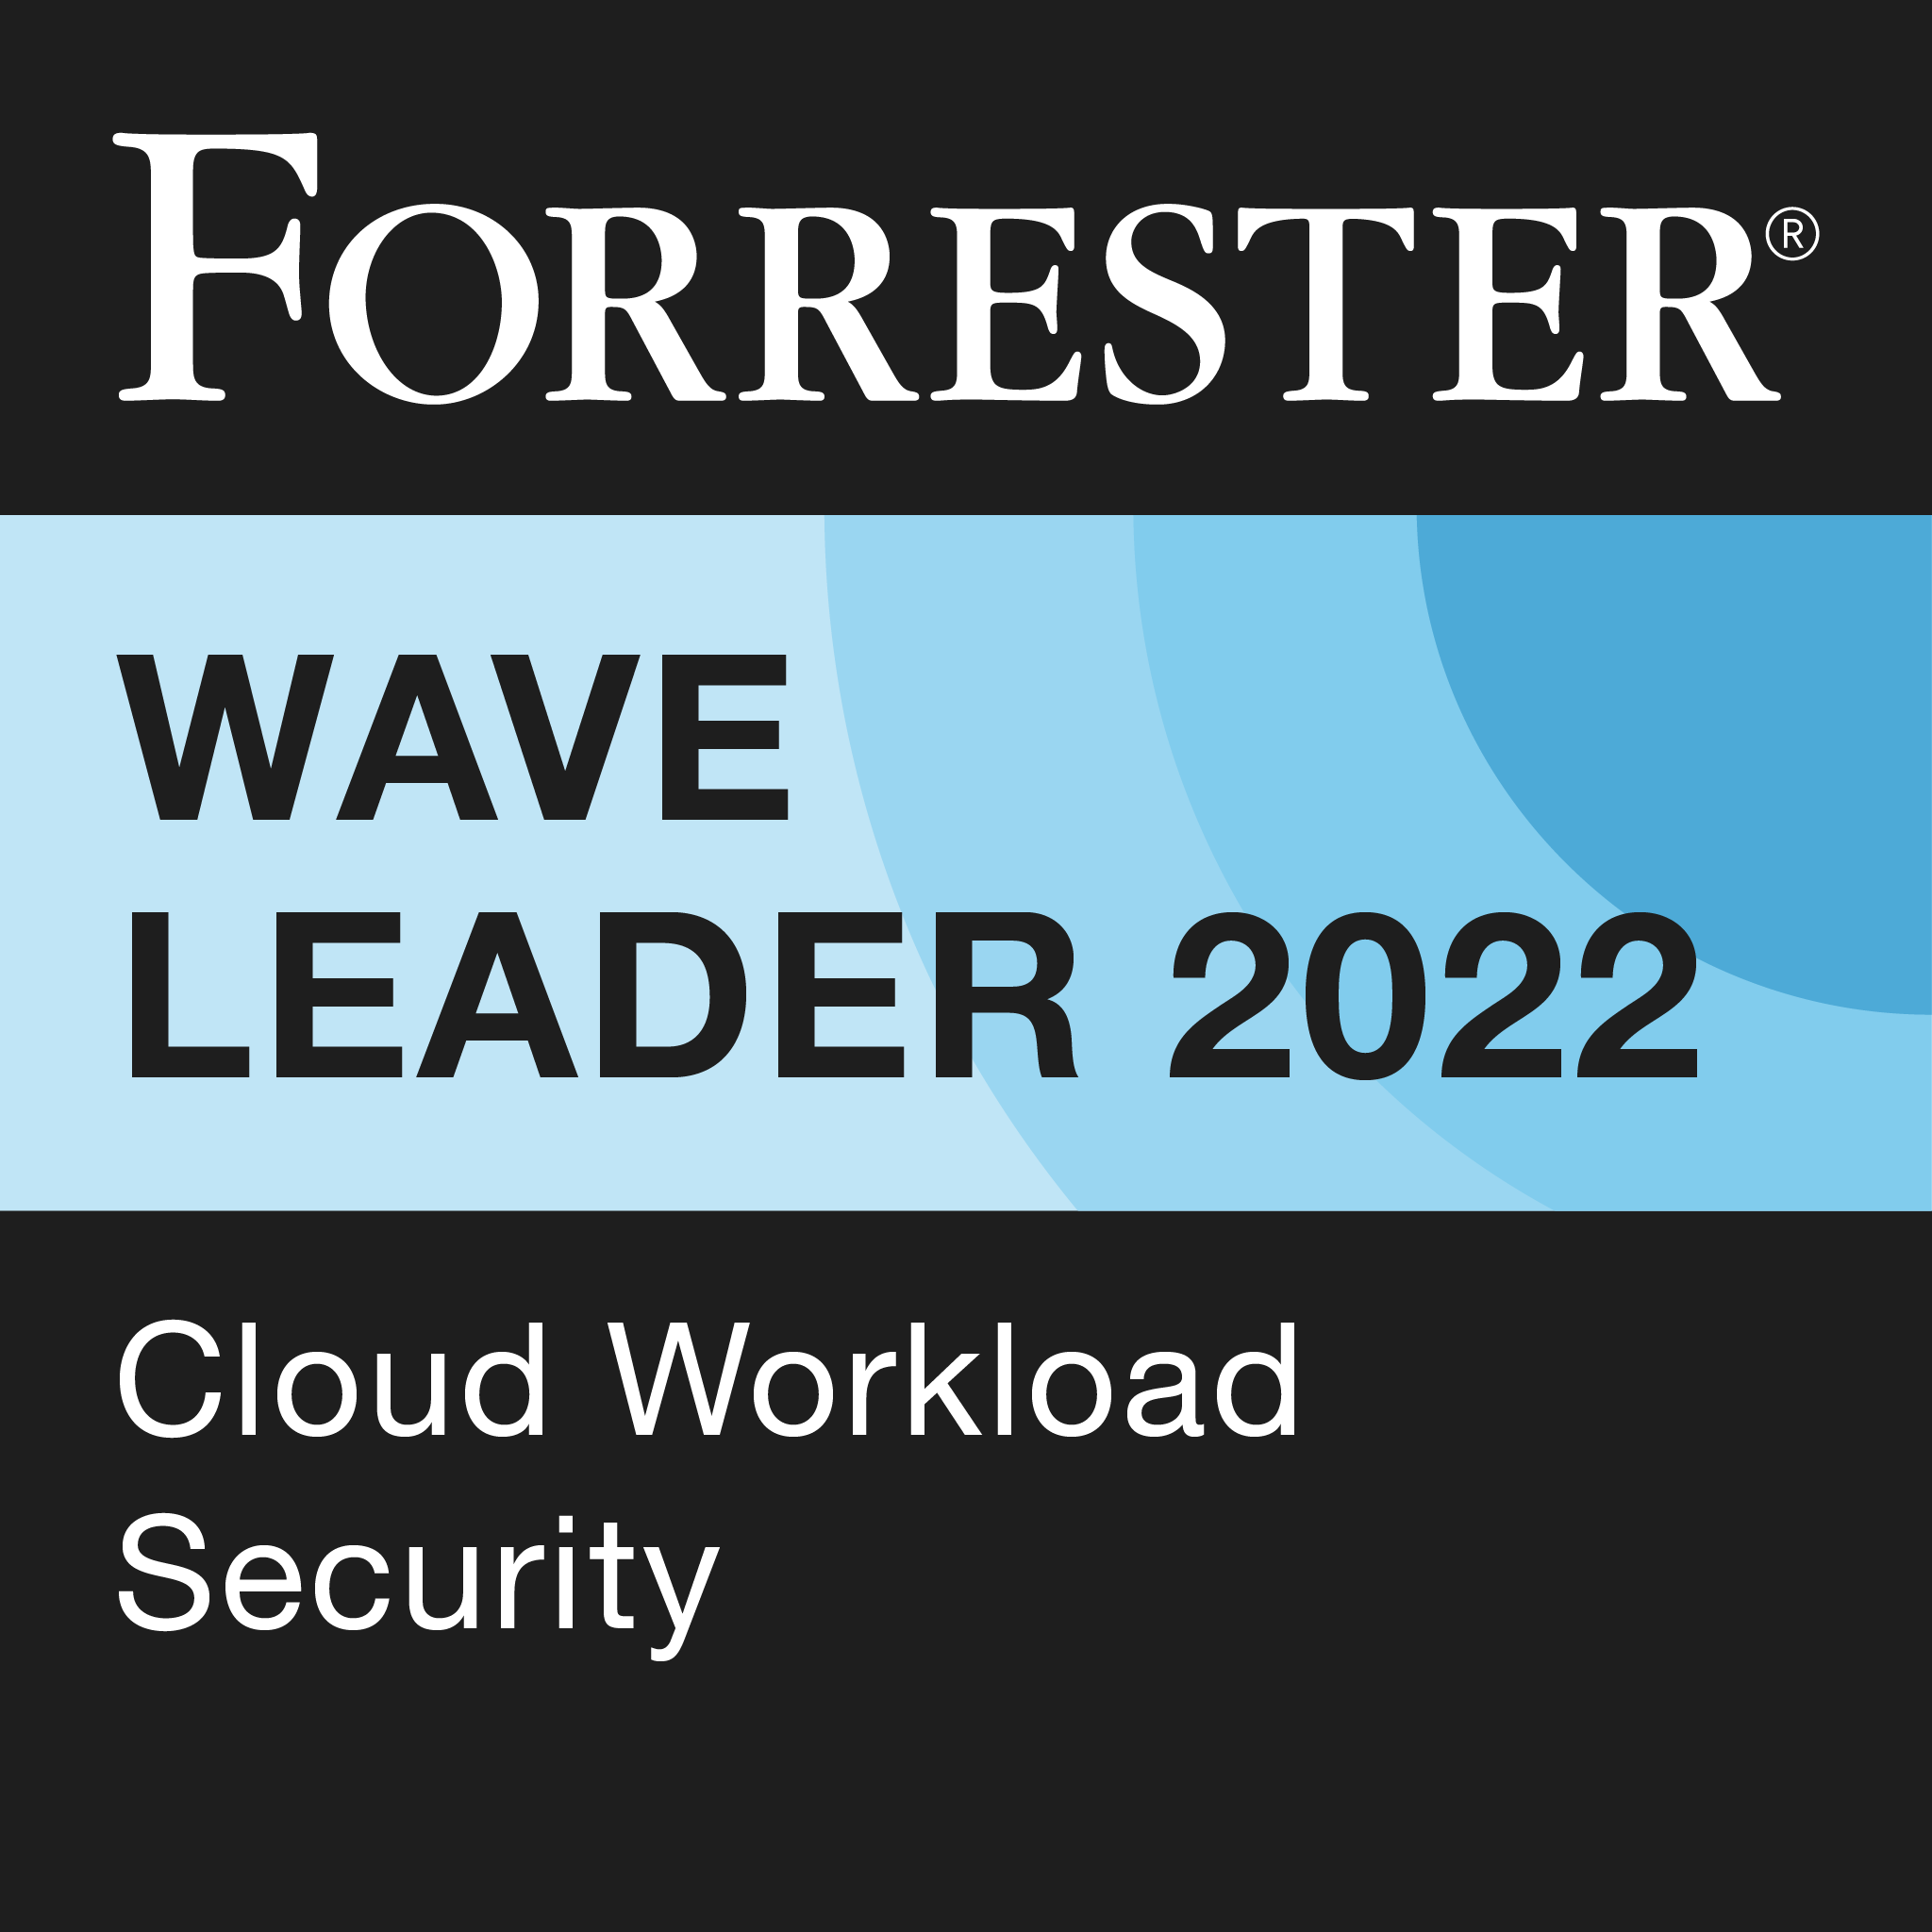 Forrester Wave Leader 2022 cloud workload security